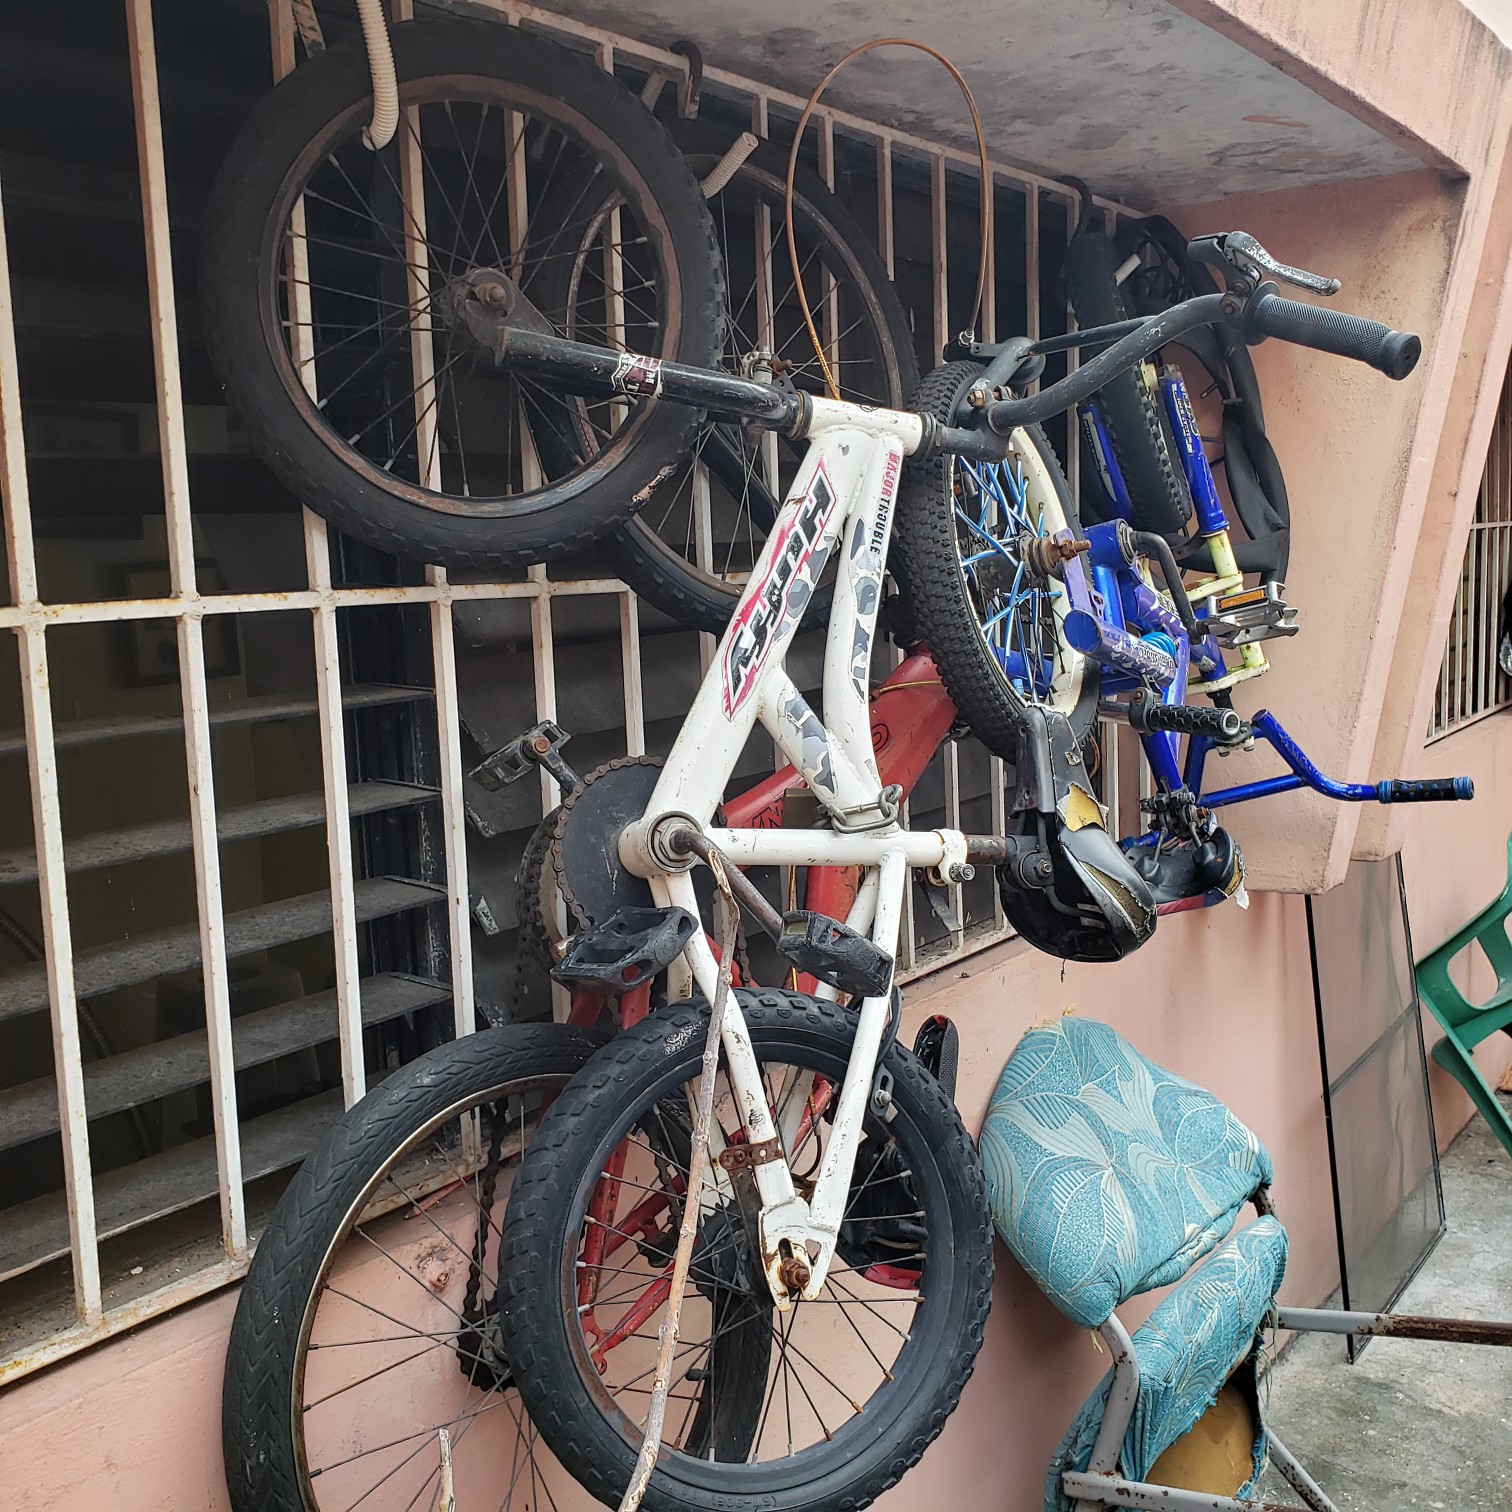 bicicletas y accesorios - Bicicletas aro 16 3